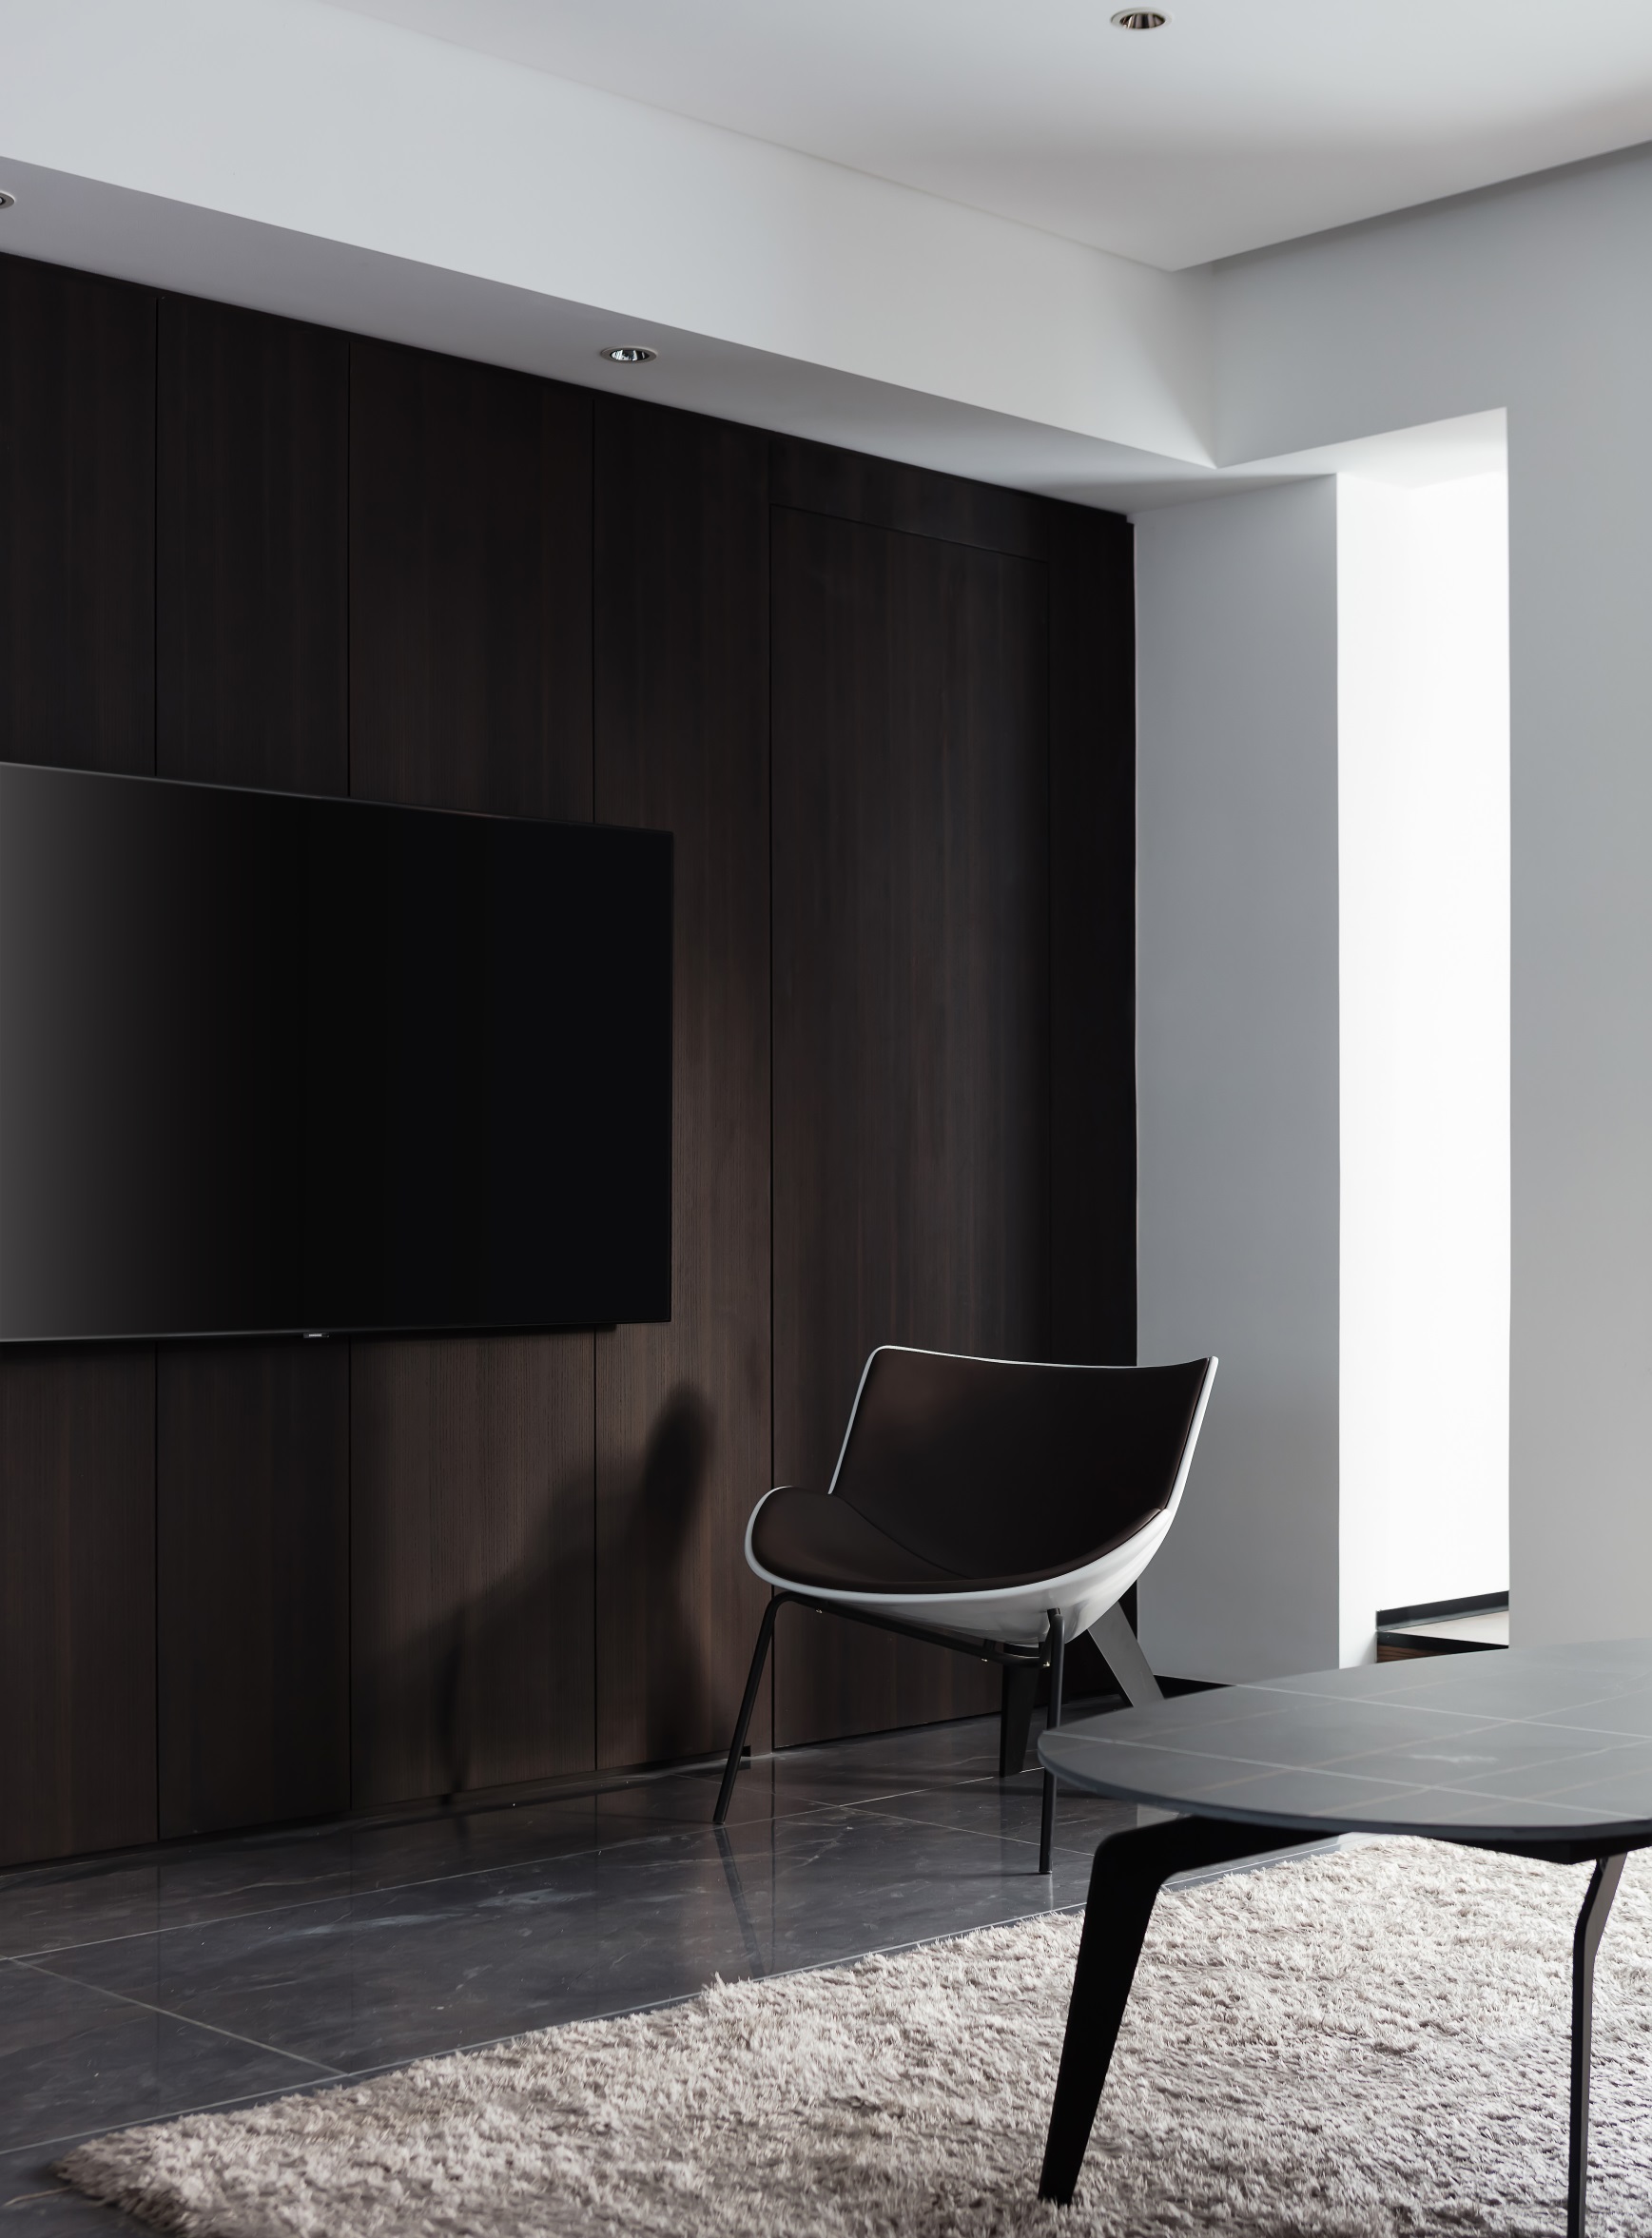 电视机背景墙宛若一位气质轩昂的绅士,黑色与木质色相结合,静谧优雅